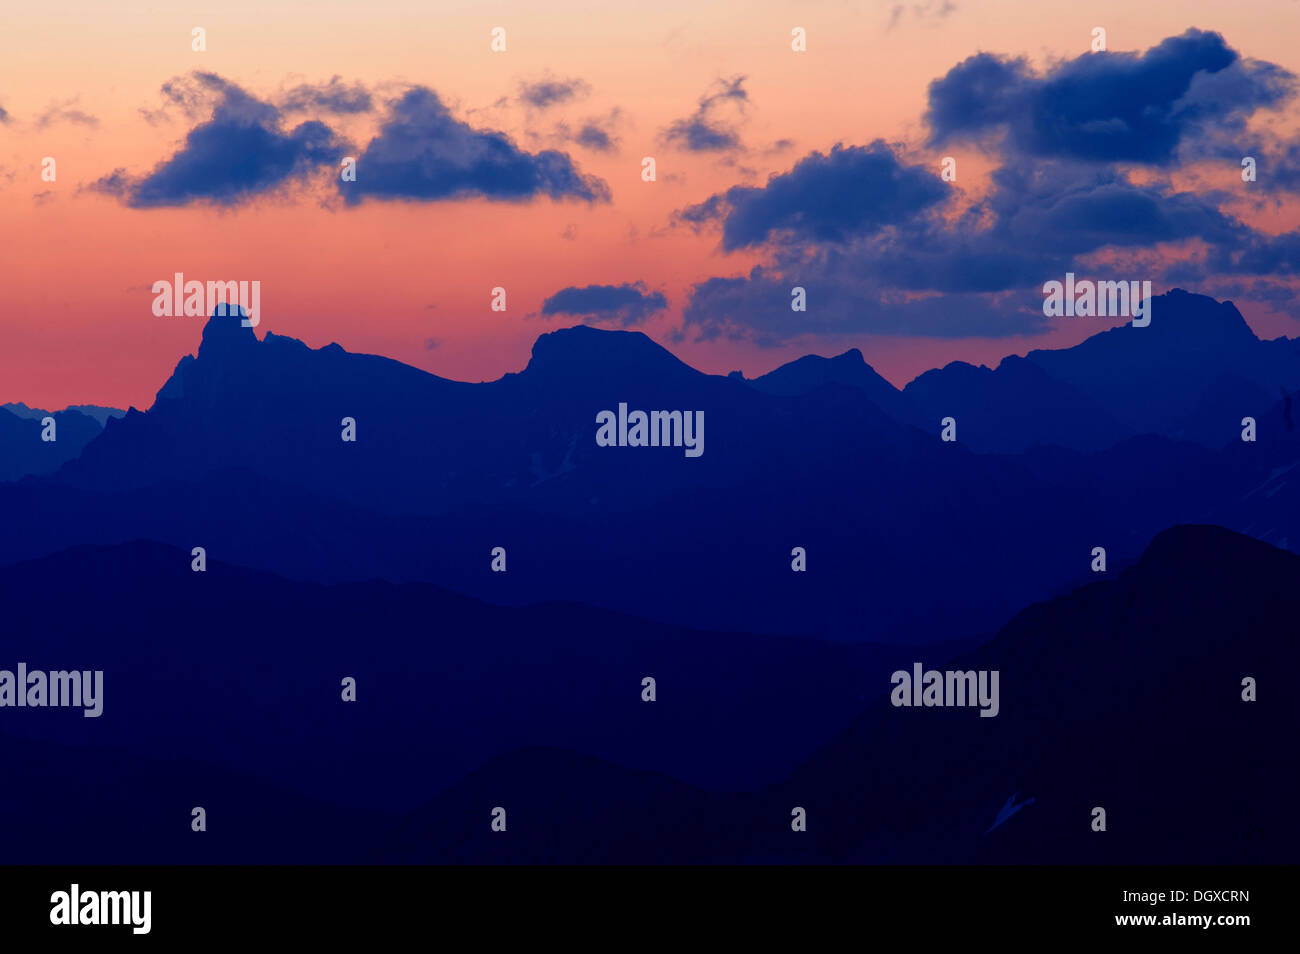 Panorama di montagna nella luce della sera con le nuvole nel cielo, Warth, Vorarlberg, Austria, Europa Foto Stock